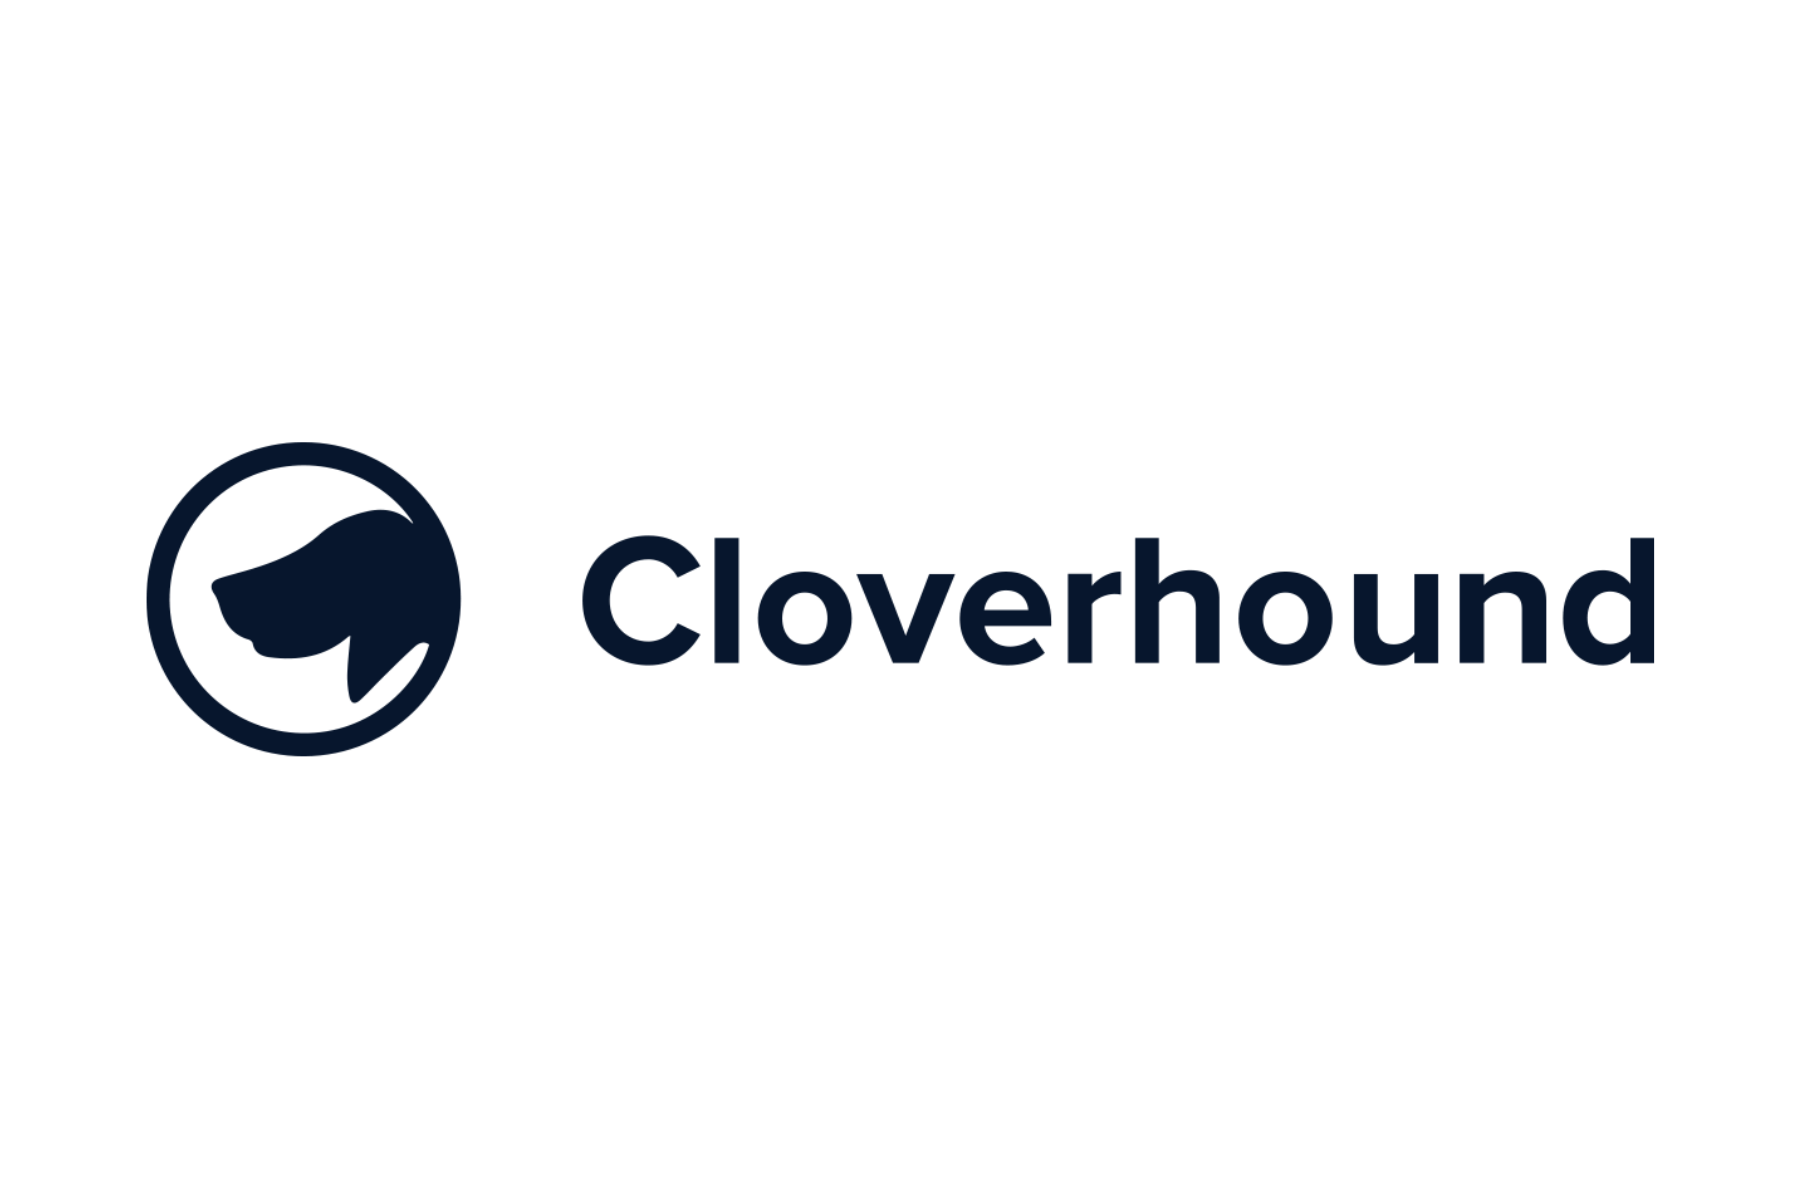 Cloverhound